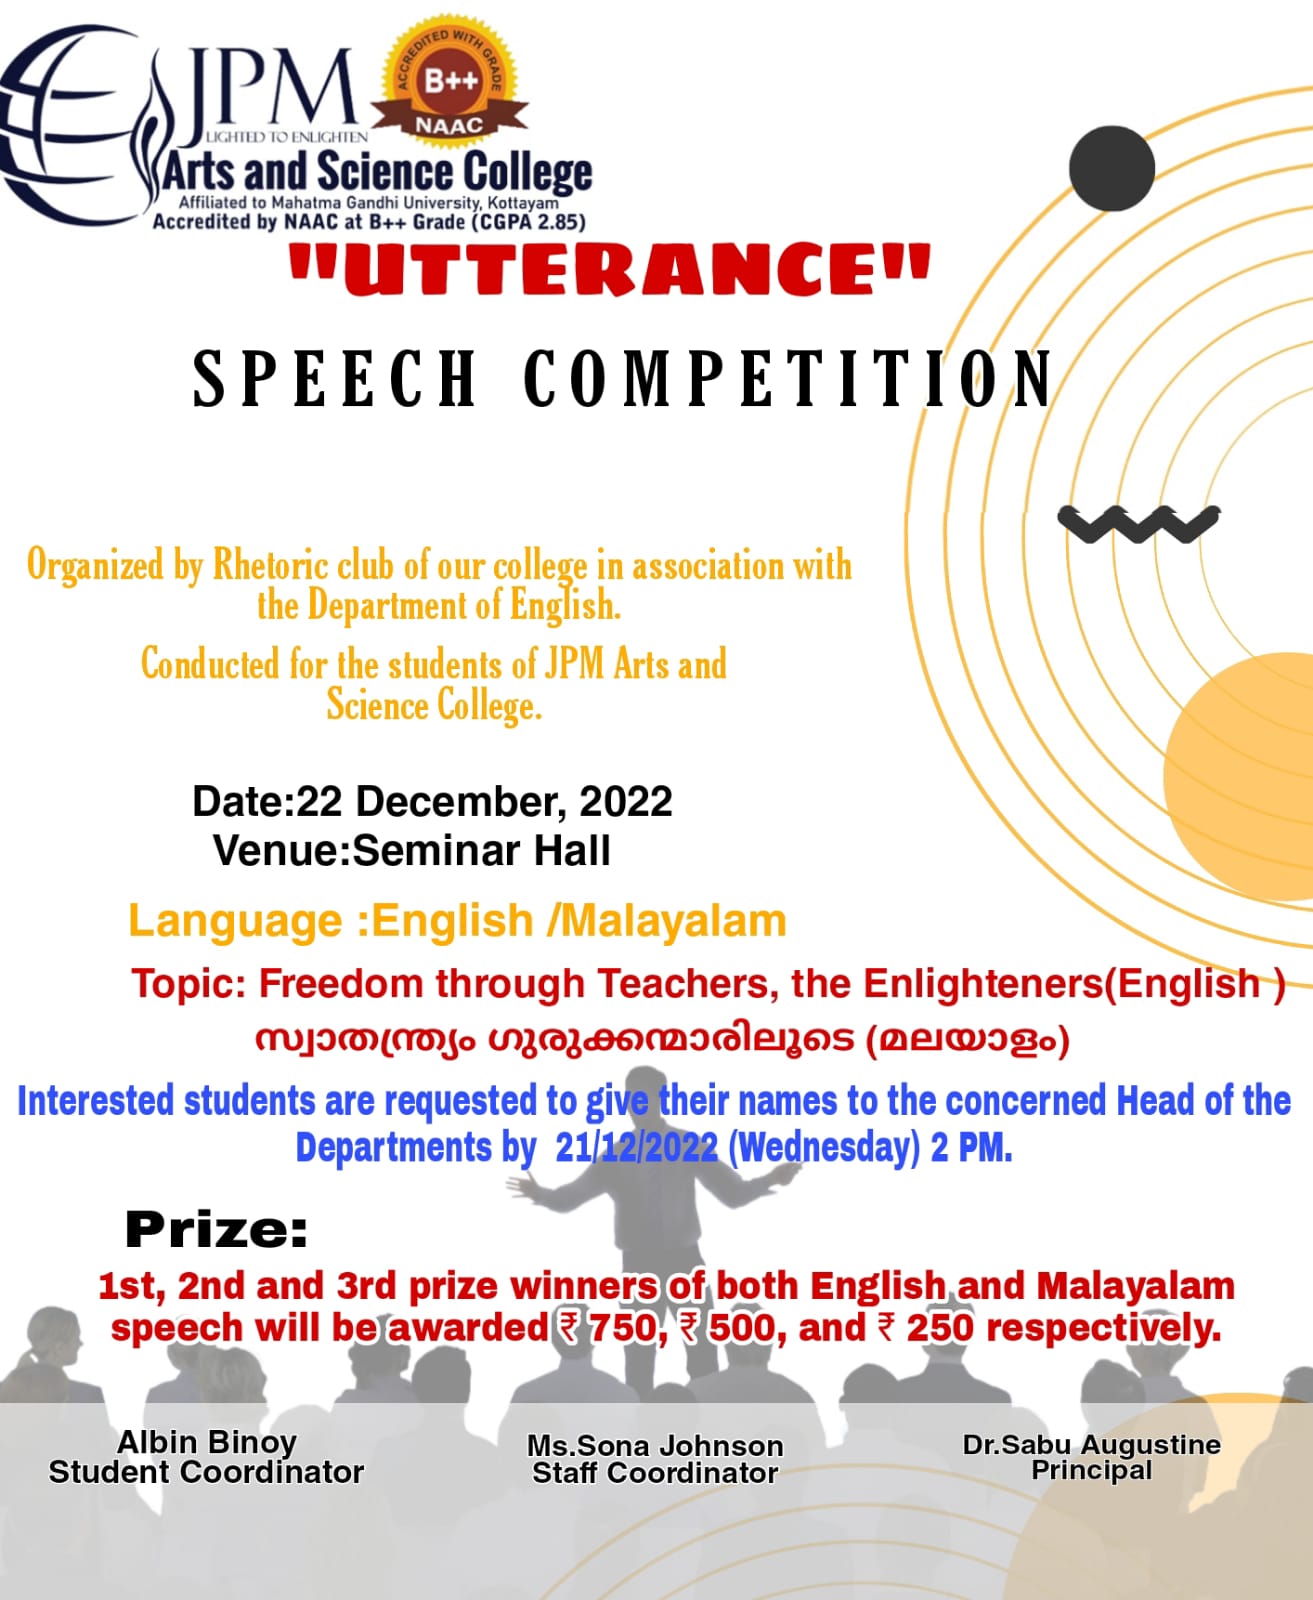 UTTERANCE - Speech Competition